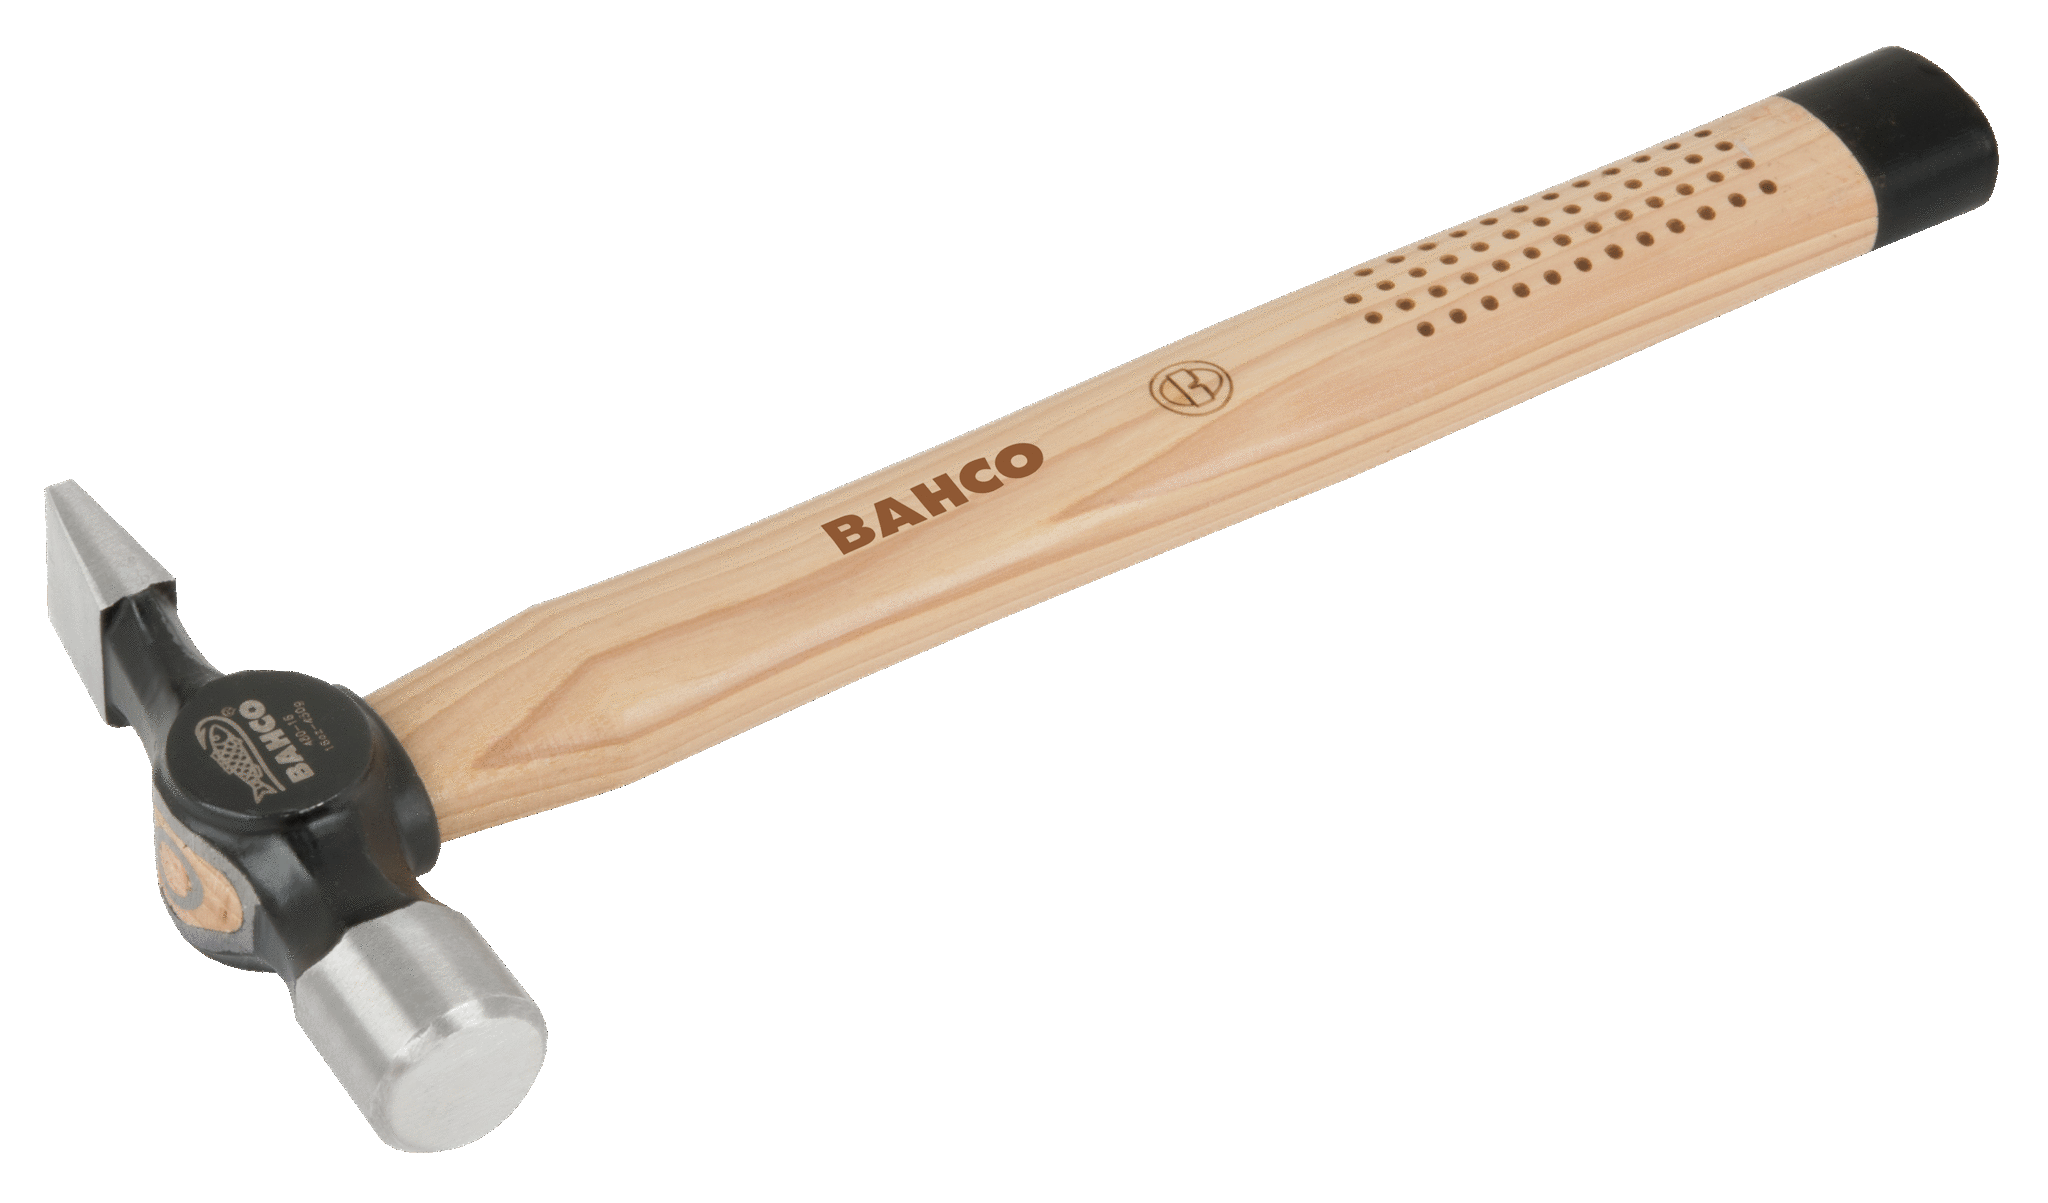 картинка Молоток с утонченным бойком, деревянная рукоятка BAHCO 480-12 от магазина "Элит-инструмент"